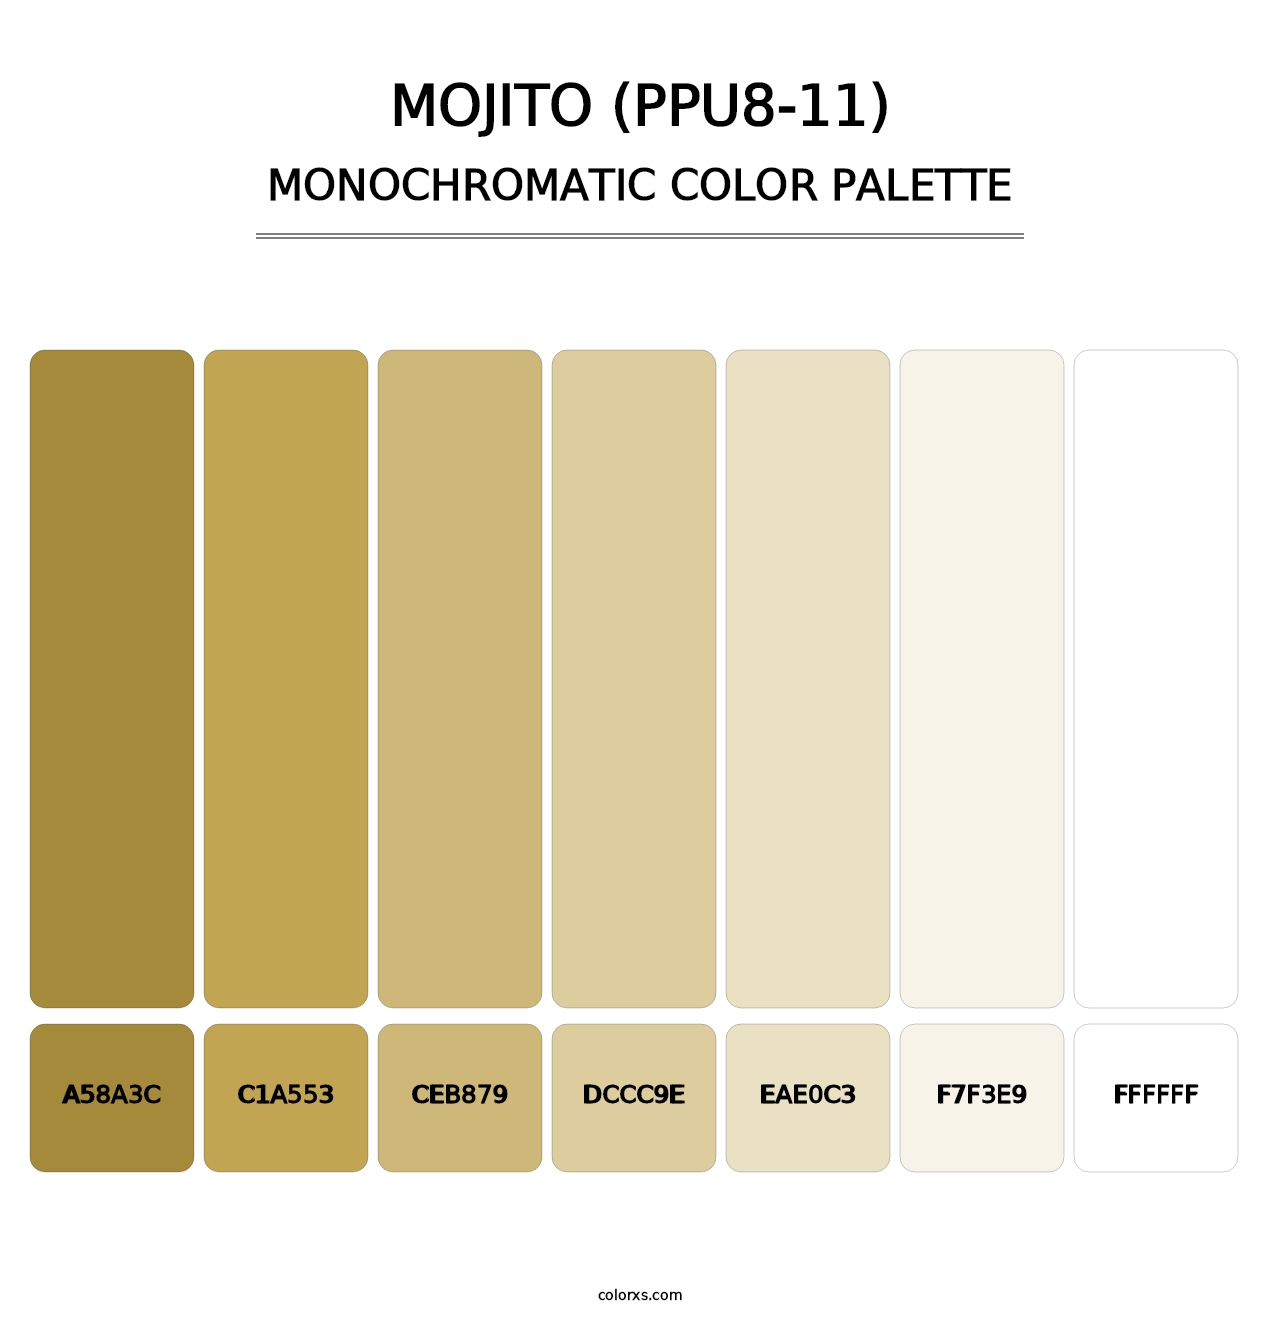 Mojito (PPU8-11) - Monochromatic Color Palette